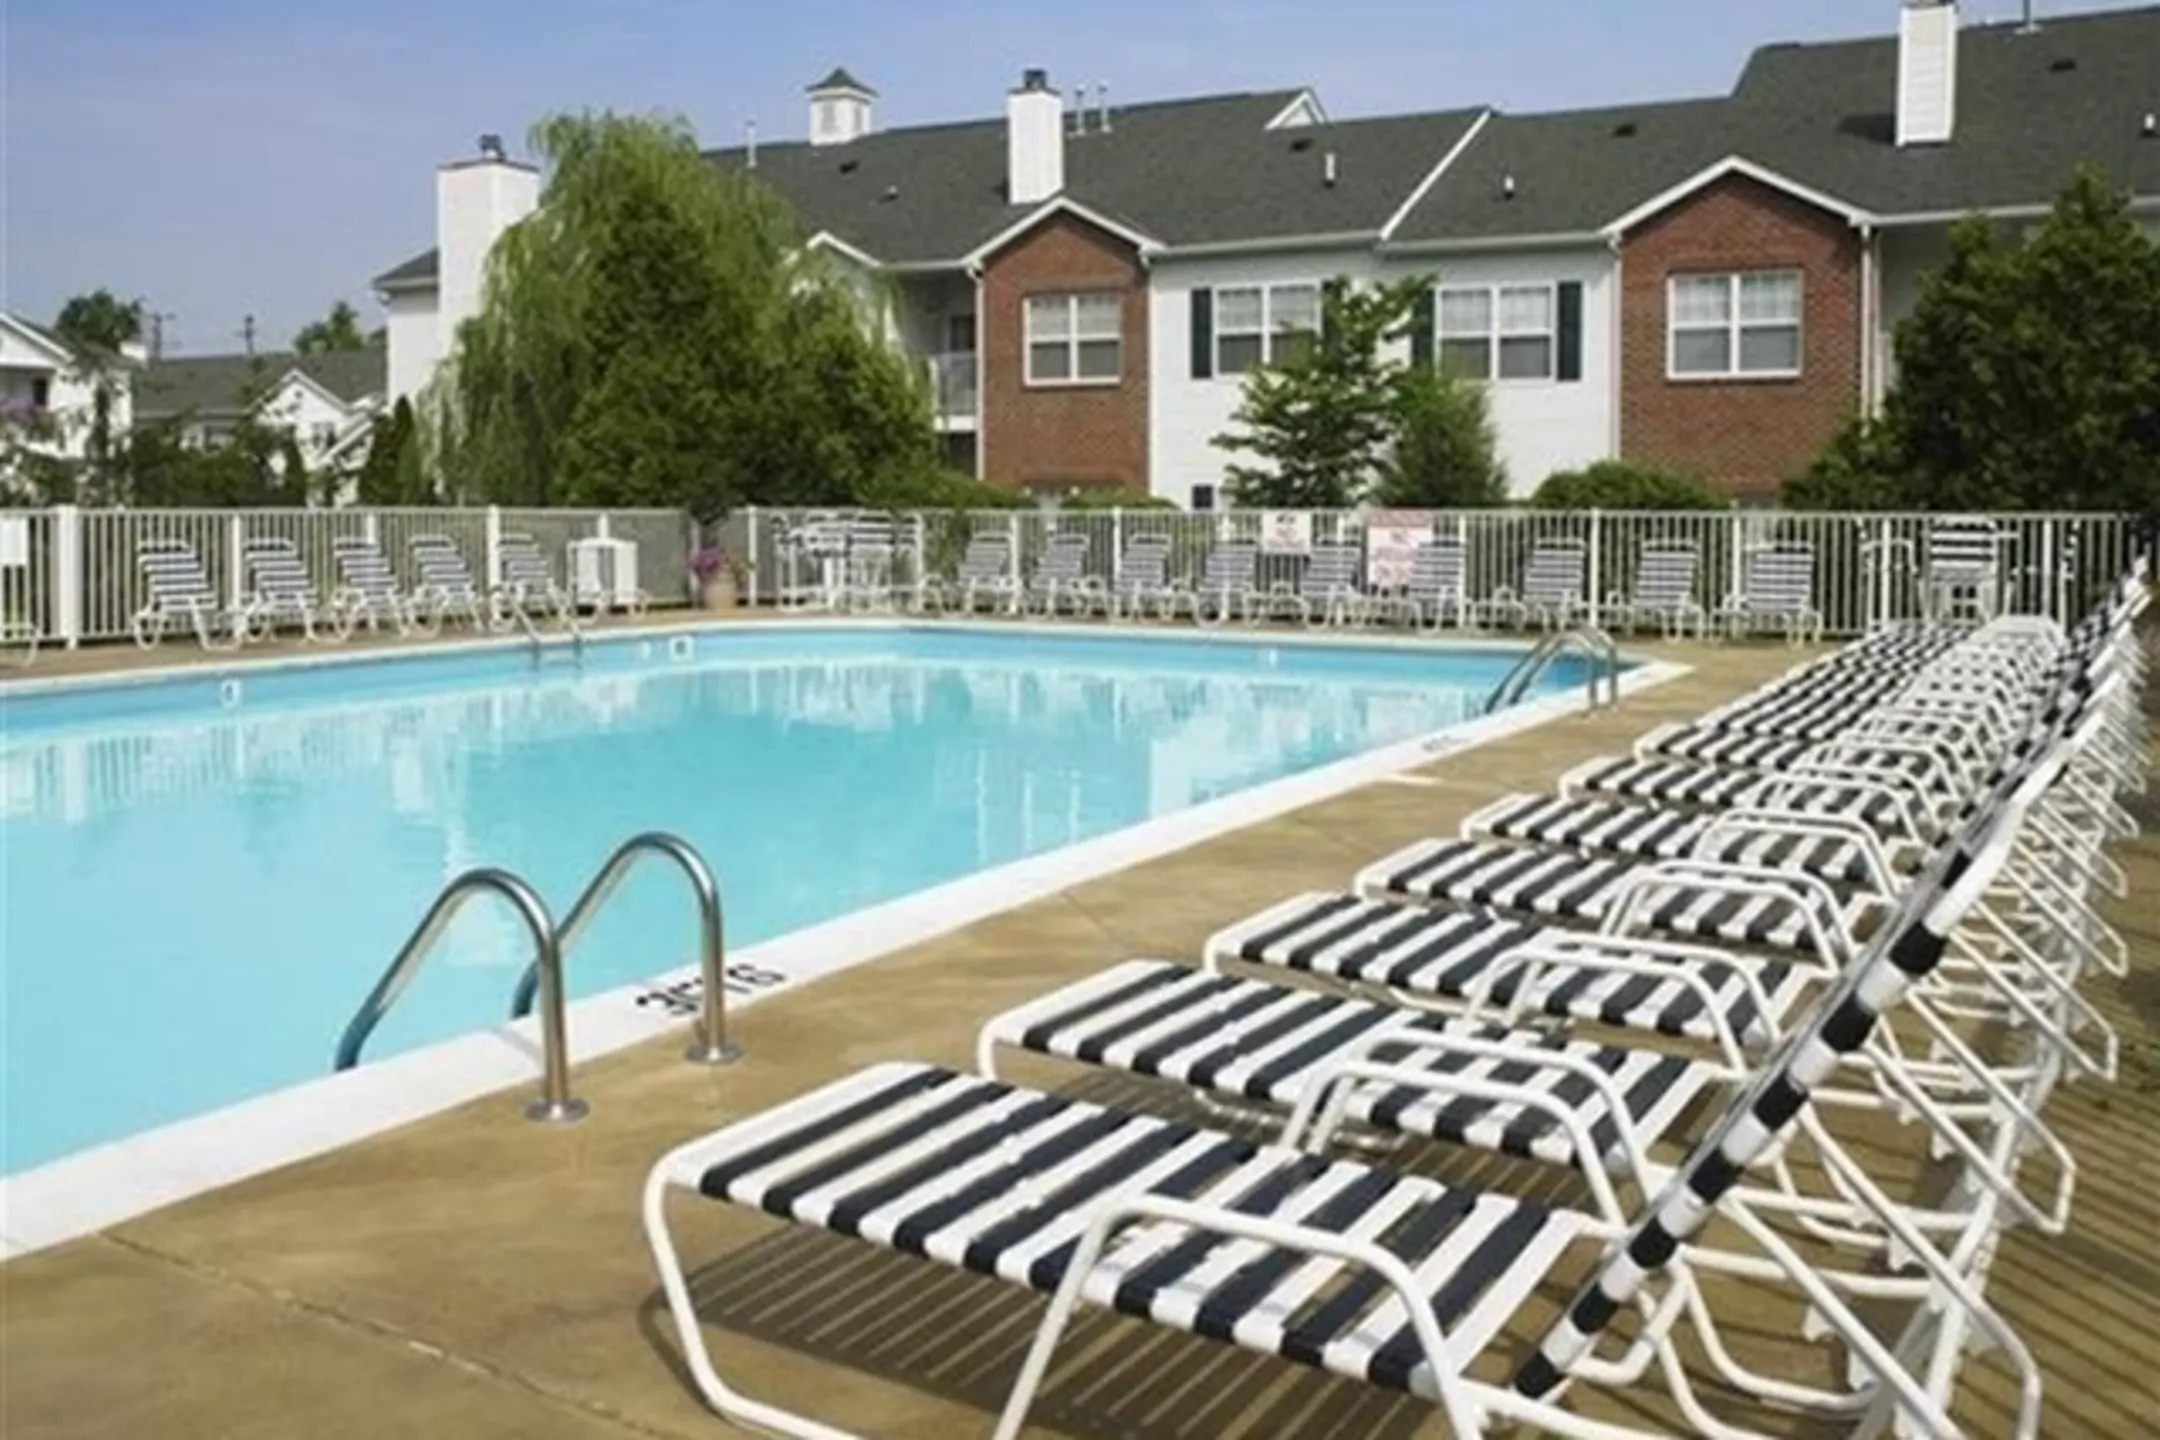 Pool - Colts Run Apartments - Lexington, KY